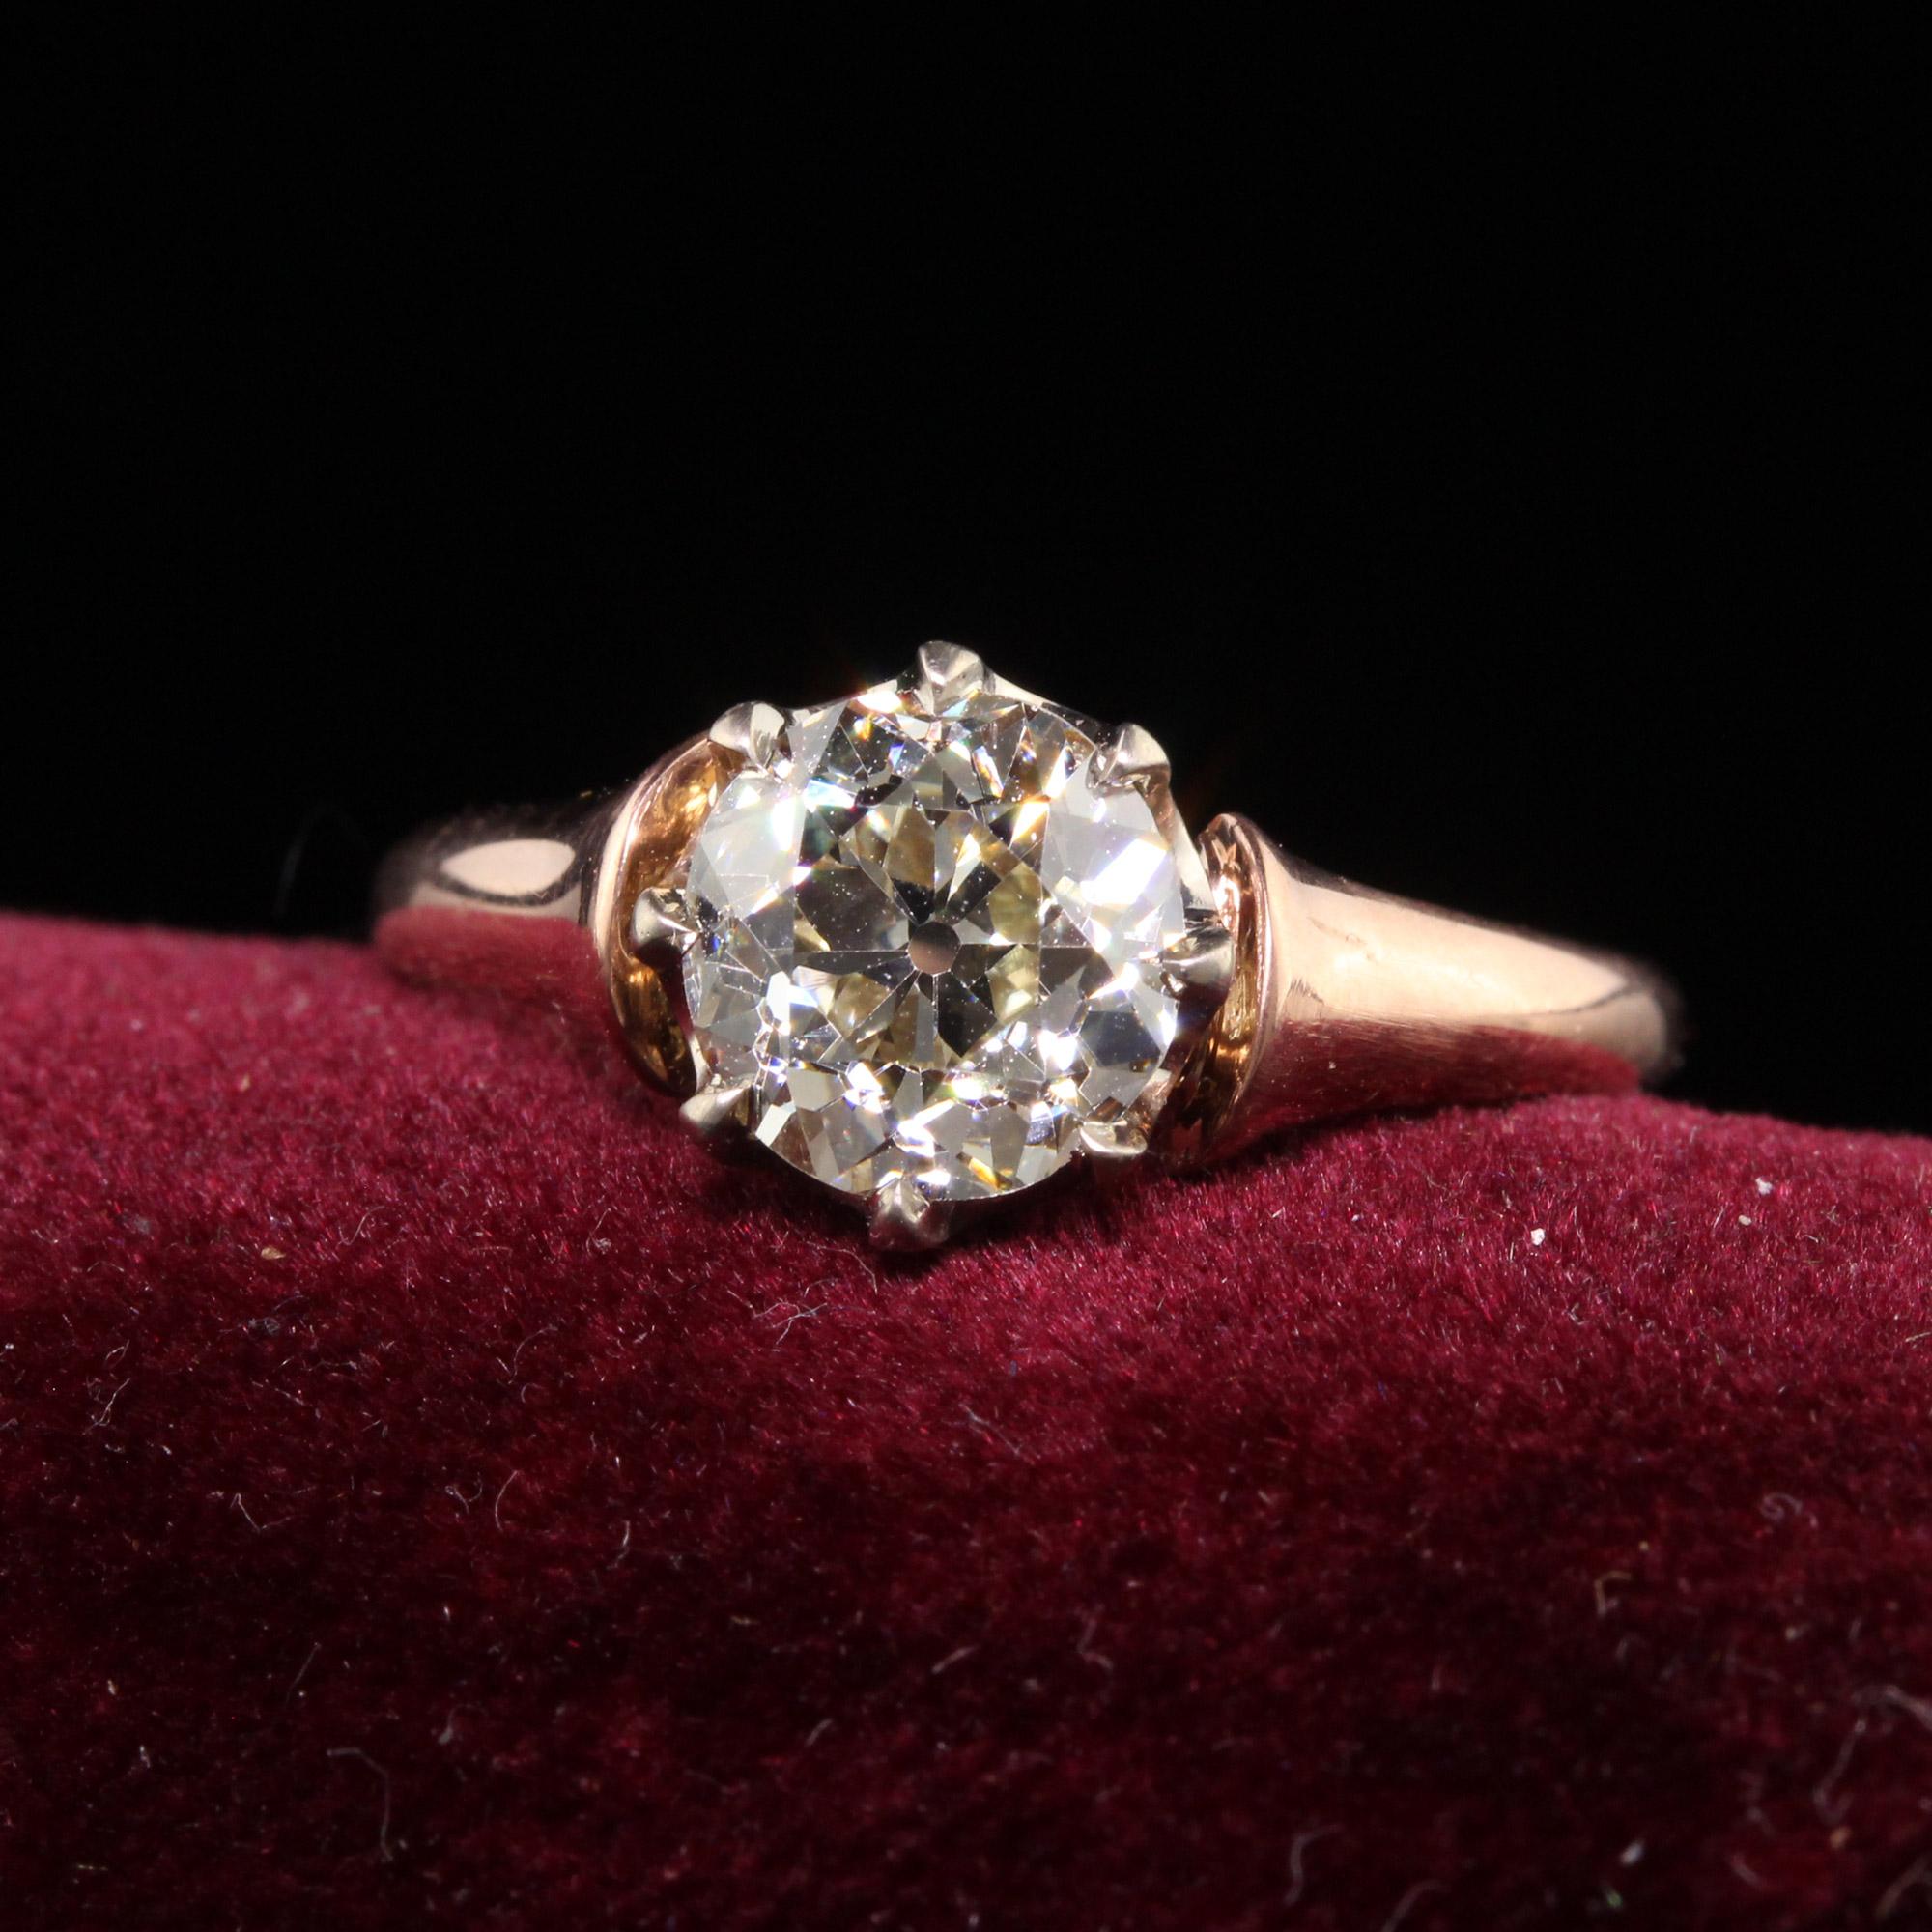 Magnifique bague de fiançailles en or rose 18 carats avec diamant taille européenne de style Art déco ancien. Cette magnifique bague de fiançailles est réalisée en or rose 18 carats et un panier en or blanc 18 carats. Le centre est constitué d'un